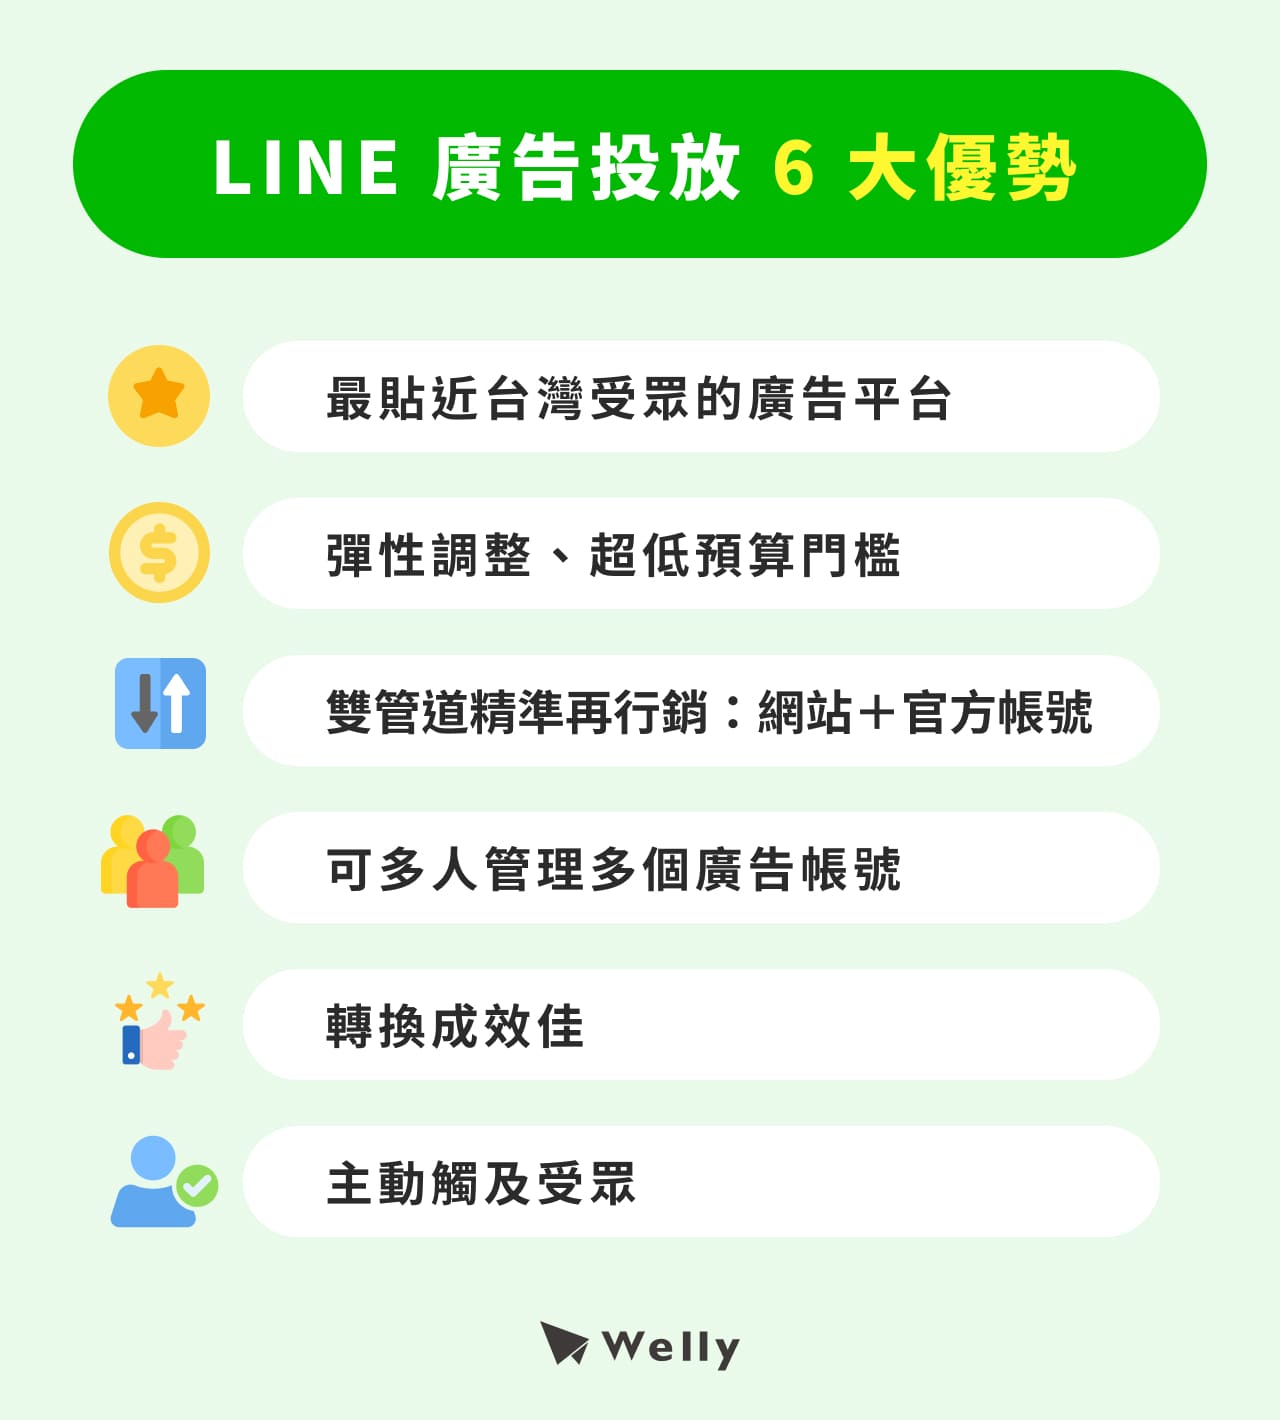 LINE 廣告投放 6 大優勢：最貼近台灣受眾生活的廣告平台、彈性調整＆超低預算門檻、雙管道精準再行銷：網站＋官方帳號、可多人管理多個廣告帳號、轉換成效佳、主動出擊